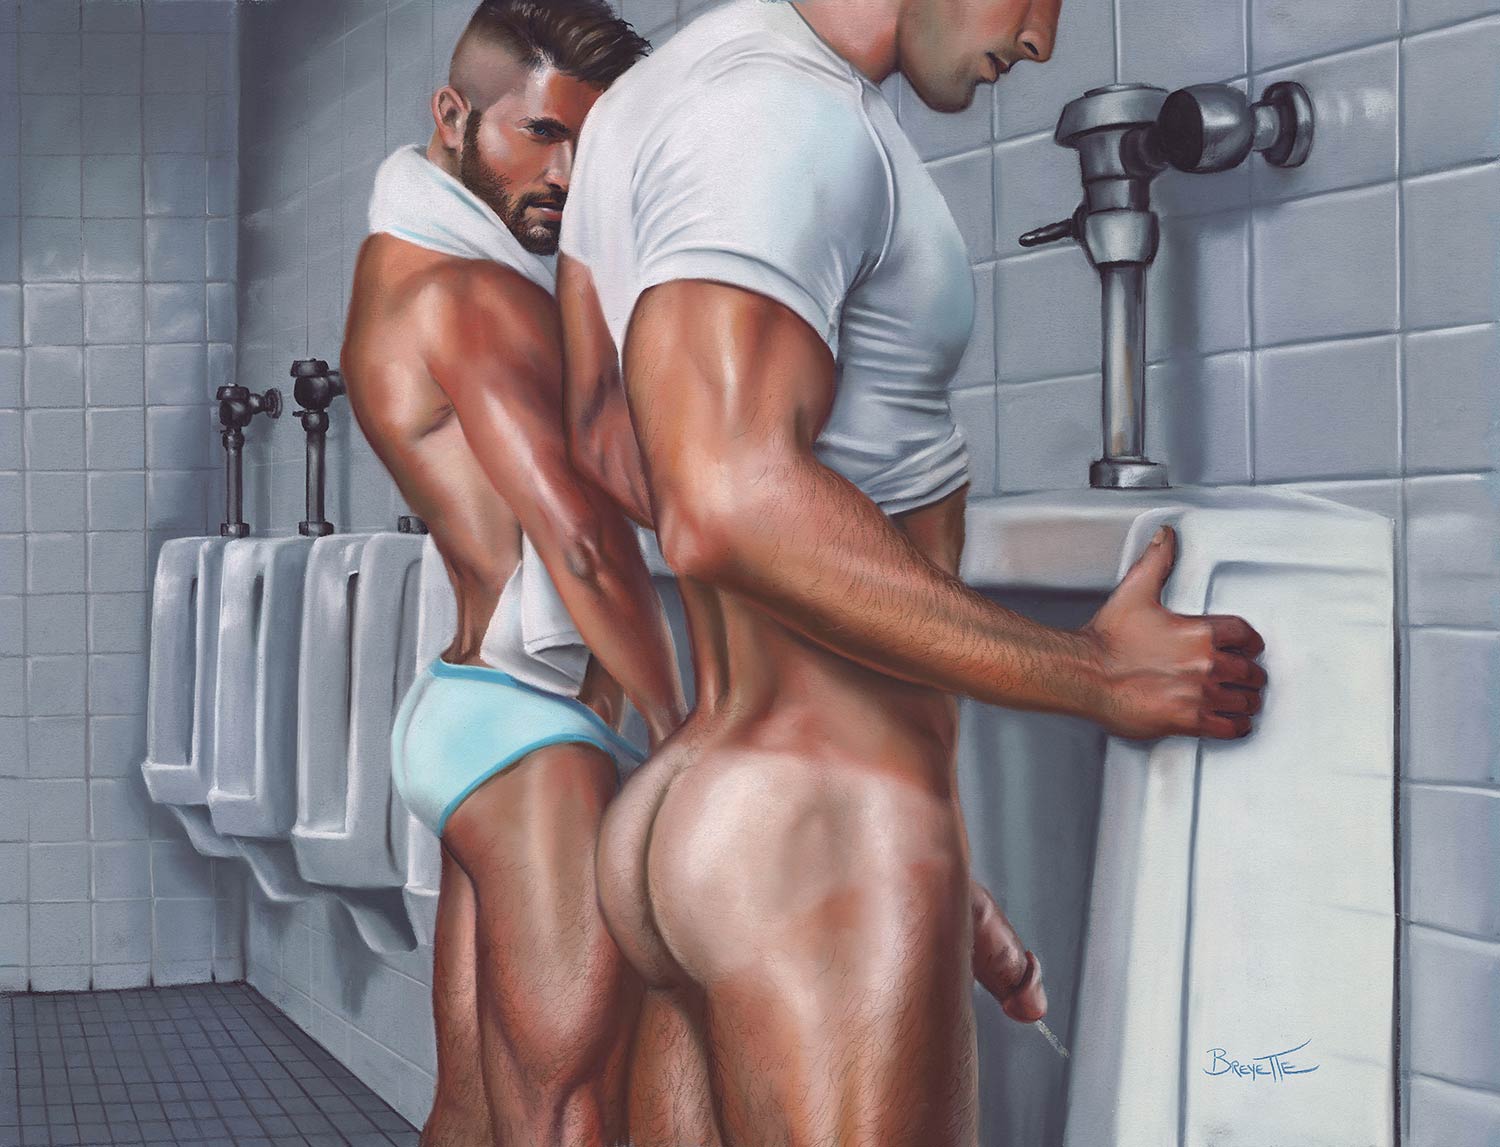 Men's Room - Art of Michael Breyette.